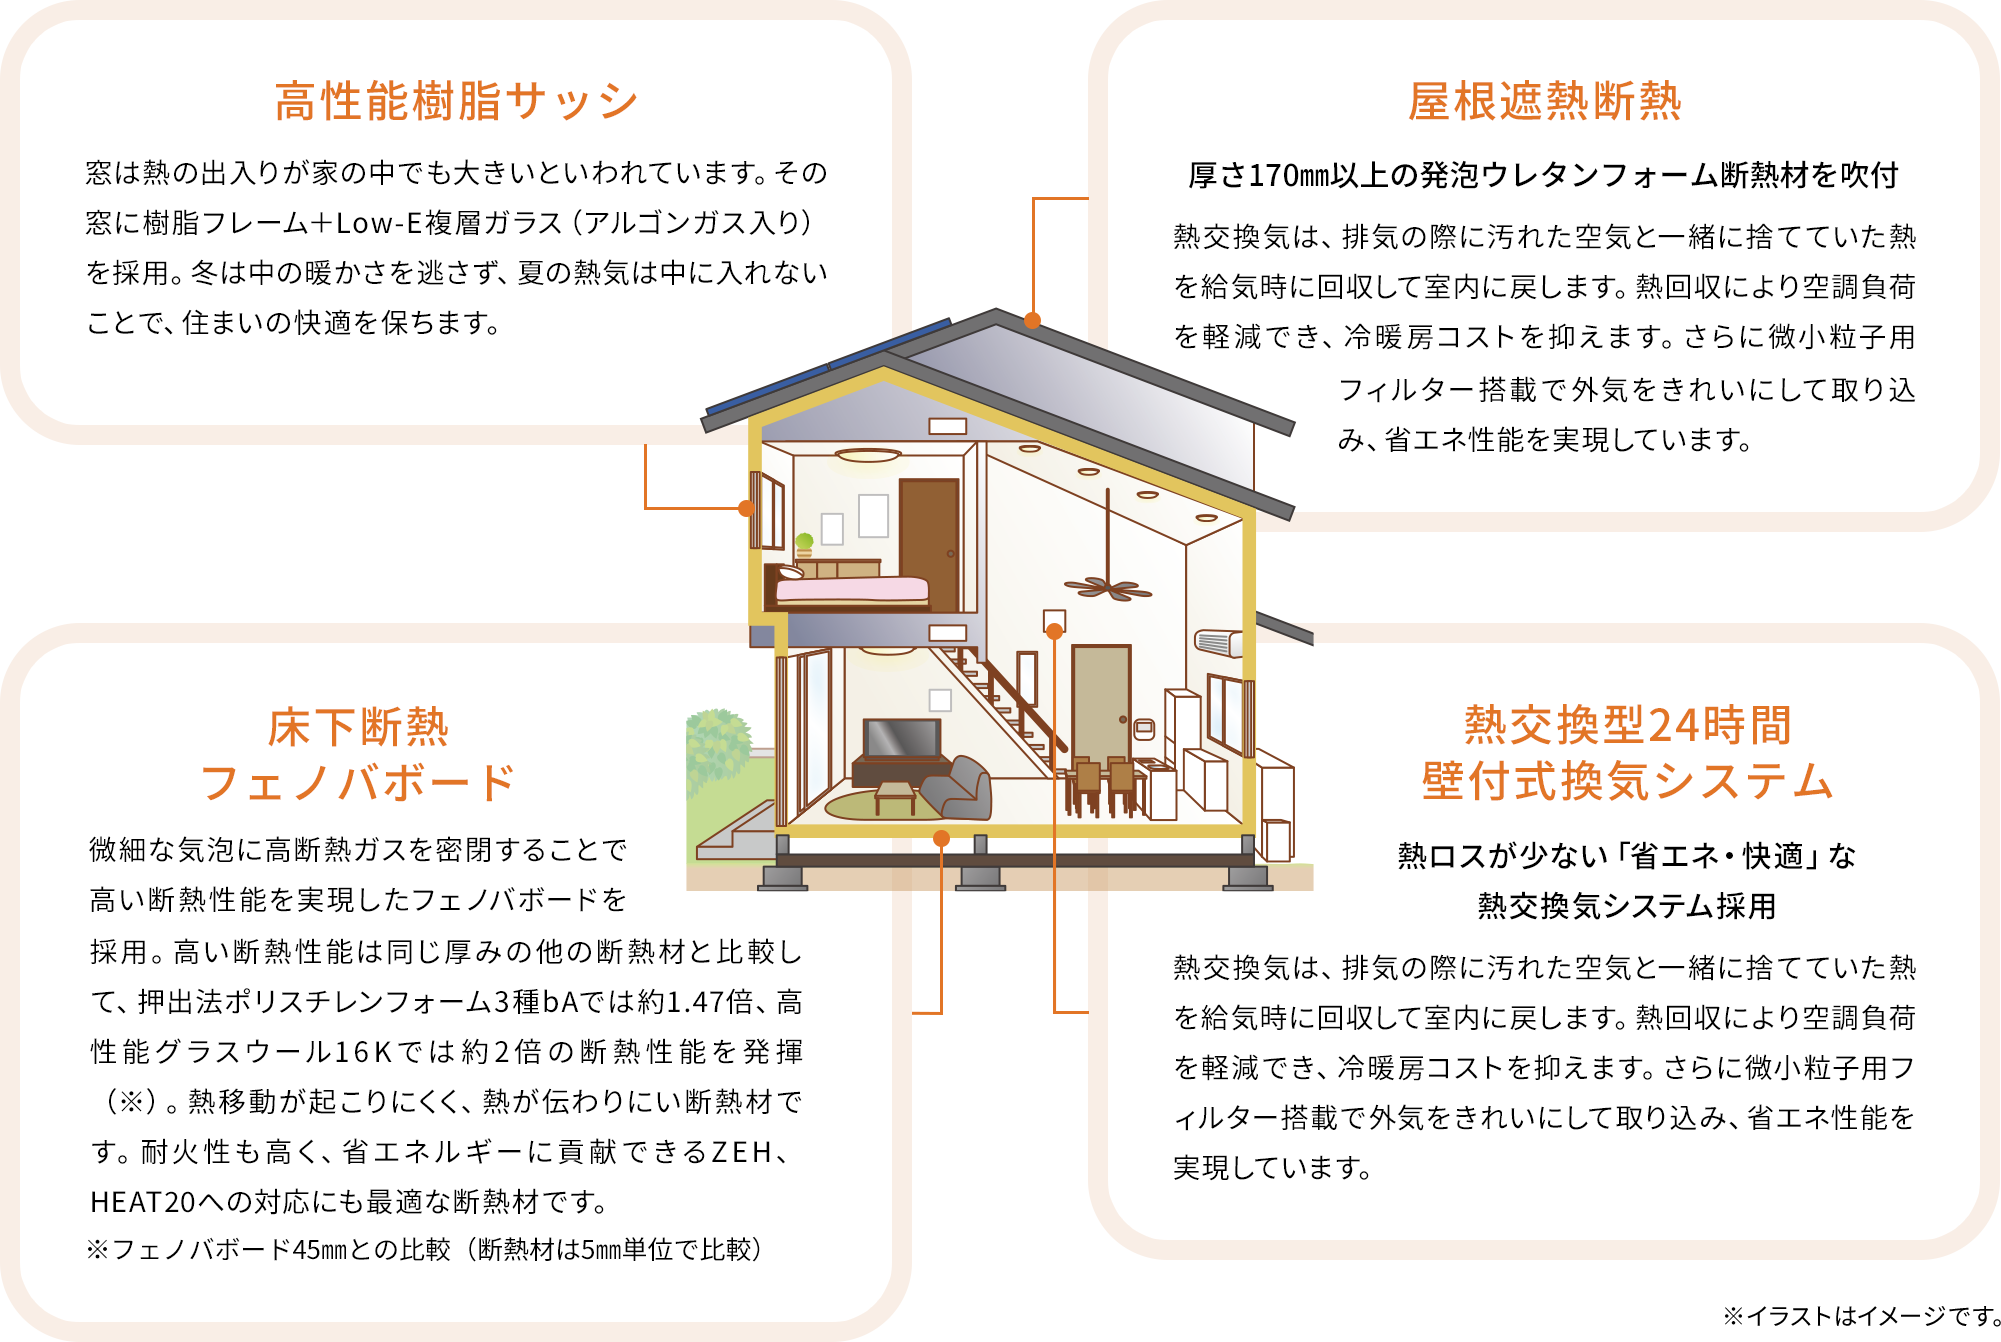 高性能樹脂サッシ　窓は熱の出入りが家の中でも大きいといわれています。その窓に樹脂フレーム＋Low-E複層ガラス（アルゴンガス入り）を採用。冬は中の暖かさを逃さず、夏の熱気は中に入れないことで、住まいの快適を保ちます。　｜　屋根遮熱断熱　厚さ170㎜以上の発泡ウレタンフォーム断熱材を吹付　熱交換気は、排気の際に汚れた空気と一緒に捨てていた熱を給気時に回収して室内に戻します。熱回収により空調負荷を軽減でき、冷暖房コストを抑えます。さらに微小粒子用フィルター搭載で外気をきれいにして取り込み、省エネ性能を実現しています。　｜　床下断熱フェノバボード　微細な気泡に高断熱ガスを密閉することで高い断熱性能を実現したフェノバボードを採用。高い断熱性能は同じ厚みの他の断熱材と比較して、押出法ポリスチレンフォーム3種bAでは約1.47倍、高性能グラスウール16Kでは約2倍の断熱性能を発揮（※）。熱移動が起こりにくく、熱が伝わりにい断熱材です。耐火性も高く、省エネルギーに貢献できるZEH、HEAT20への対応にも最適な断熱材です。※フェノバボード45㎜との比較（断熱材は5㎜単位で比較）　｜　熱交換型24時間壁付式換気システム　熱ロスが少ない「省エネ・快適」な熱交換気システム採用　熱交換気は、排気の際に汚れた空気と一緒に捨てていた熱を給気時に回収して室内に戻します。熱回収により空調負荷を軽減でき、冷暖房コストを抑えます。さらに微小粒子用フィルター搭載で外気をきれいにして取り込み、省エネ性能を実現しています。　｜　※イラストはイメージです。